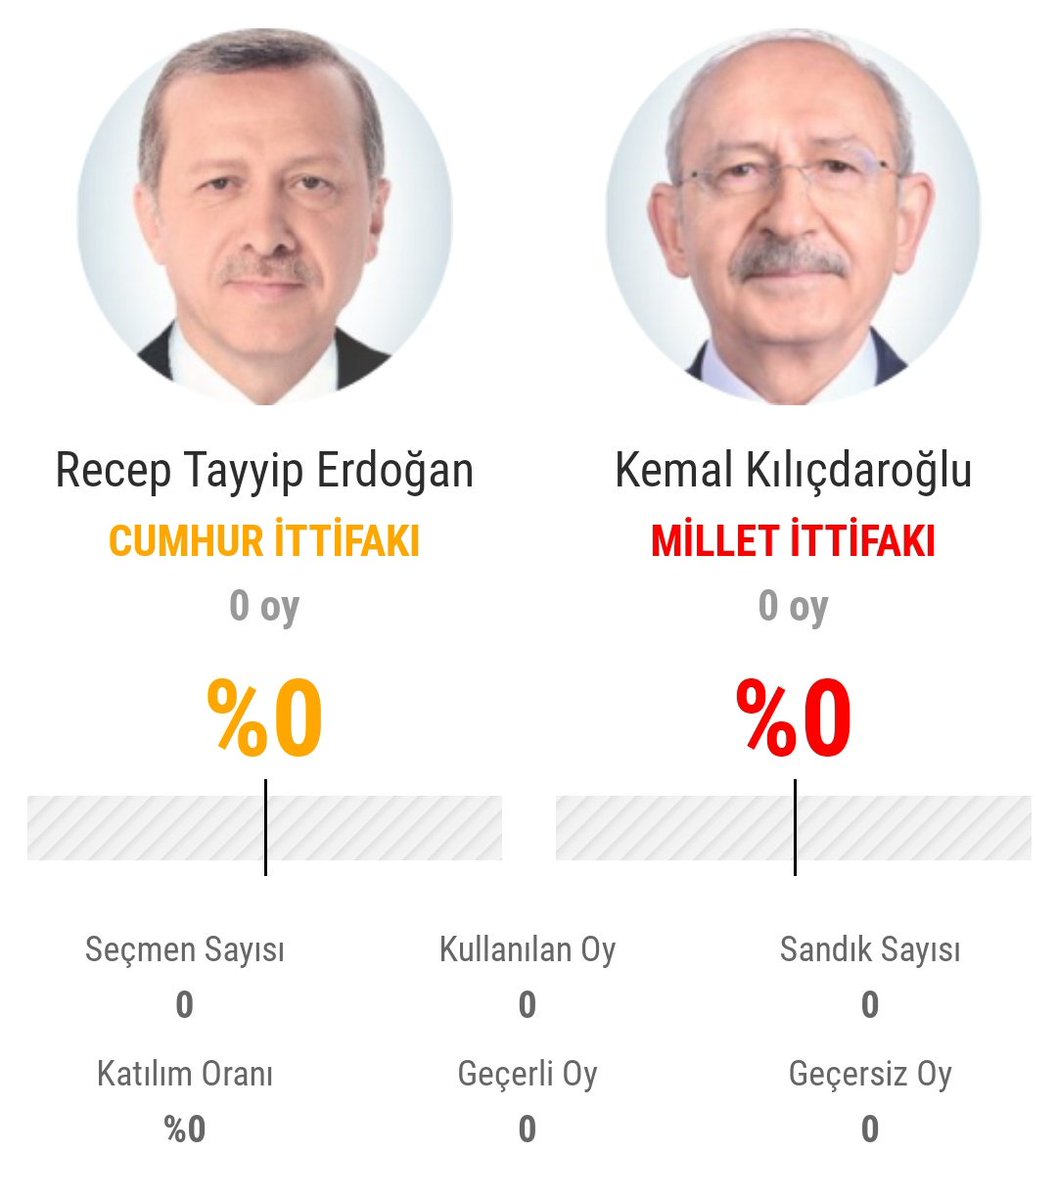 Kemal Kılıçdaroğlu % kaç alır tahminlerinizi alalım
Admin; %52 ile alacağız !
#CumhurbaskanıKılıcdaroğlu